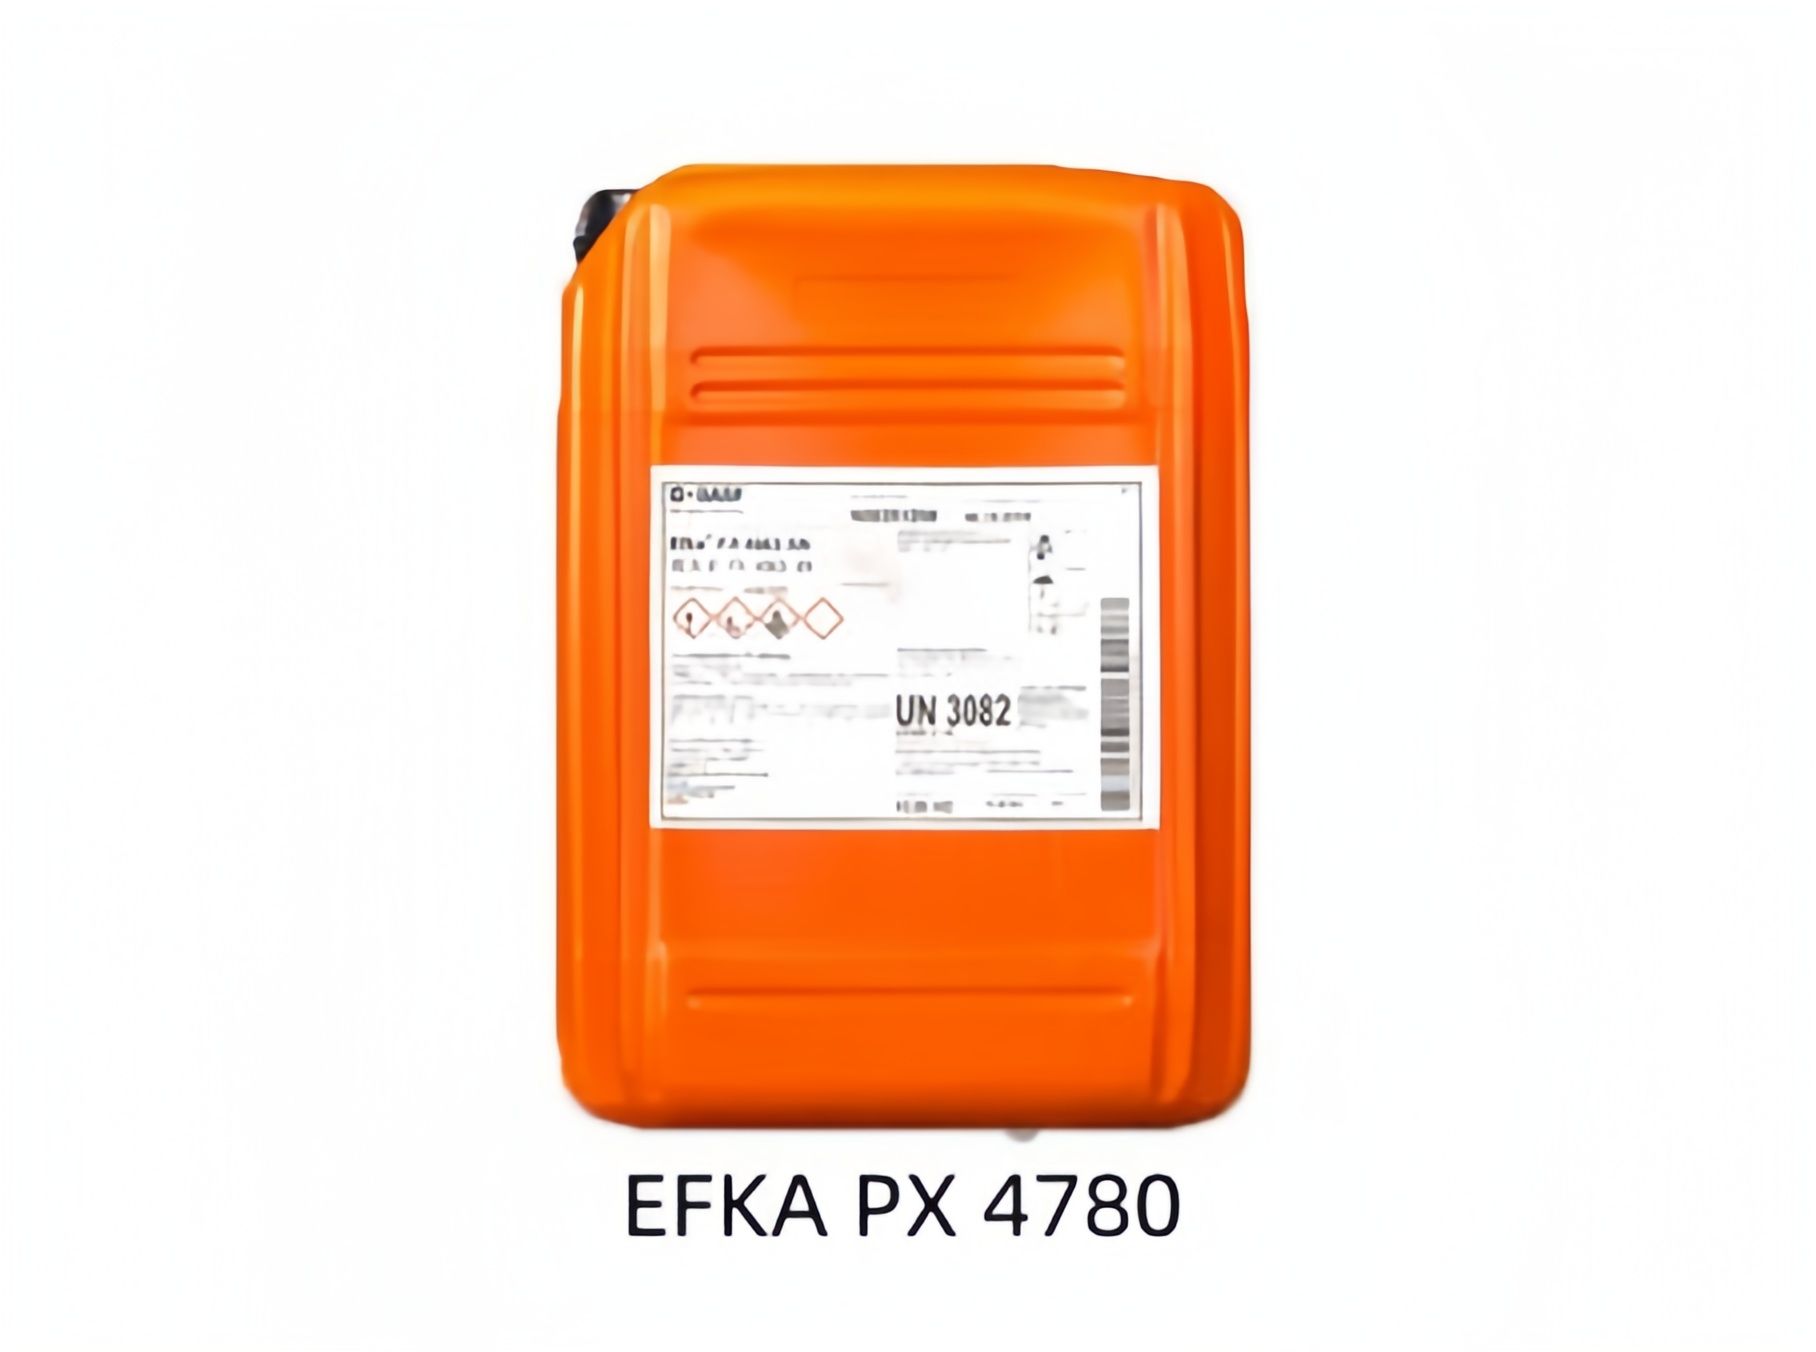 巴斯夫分散剂EFKA PX 4780